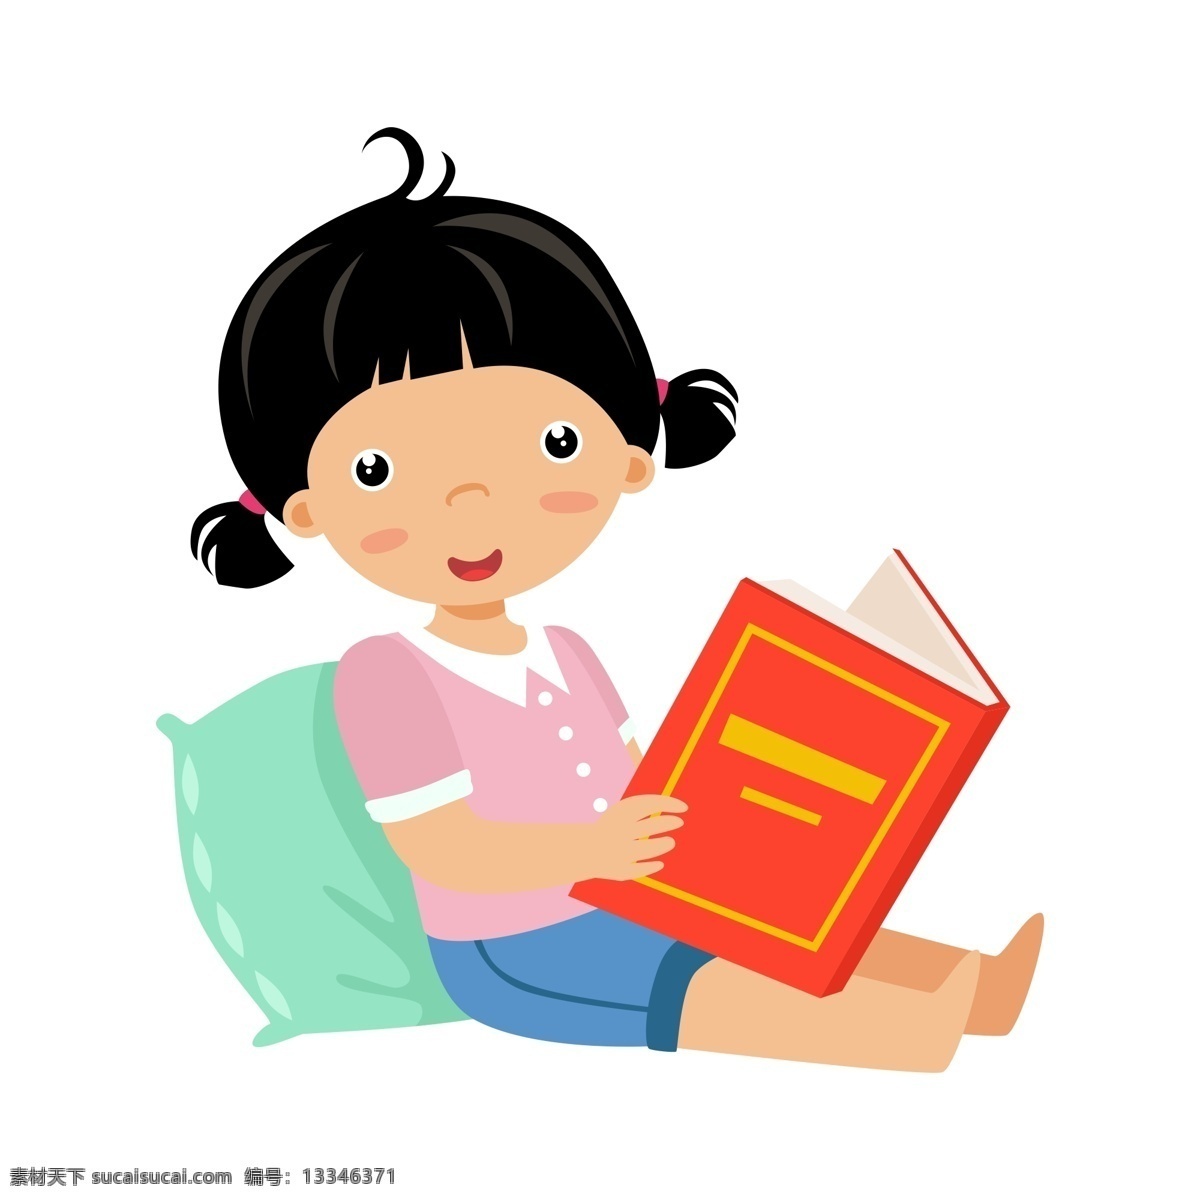 安静 看书 女孩 免 抠 元素 可爱 阅读 读书 书籍 png元素 免抠元素 生物静物